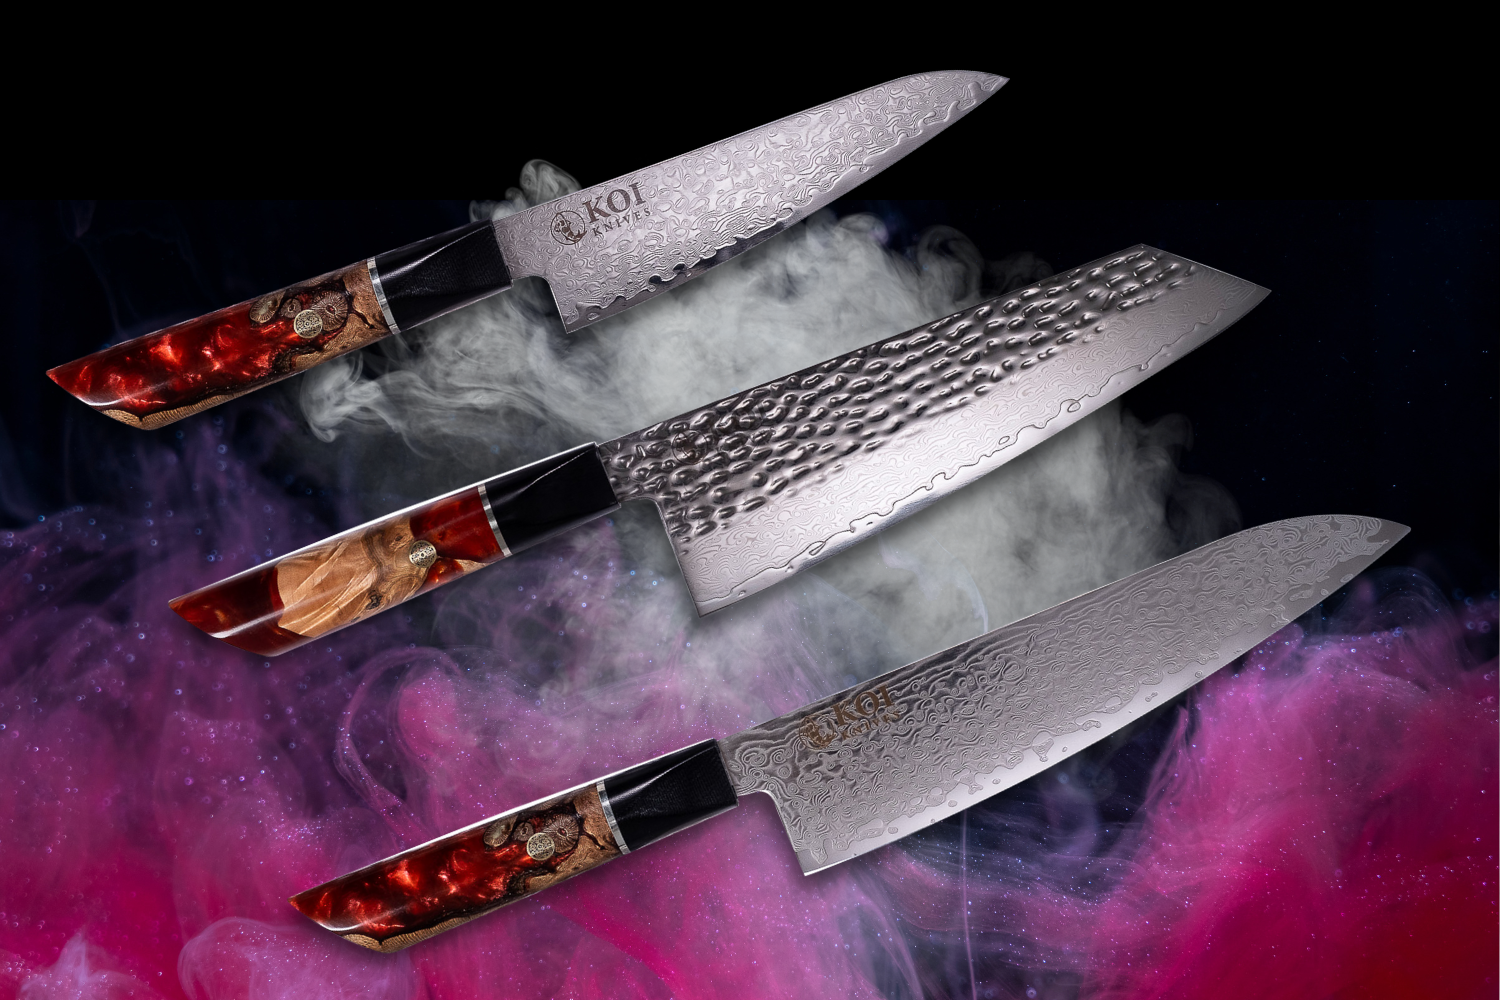 Elegant Japanese Pocketknife, Steak Knife